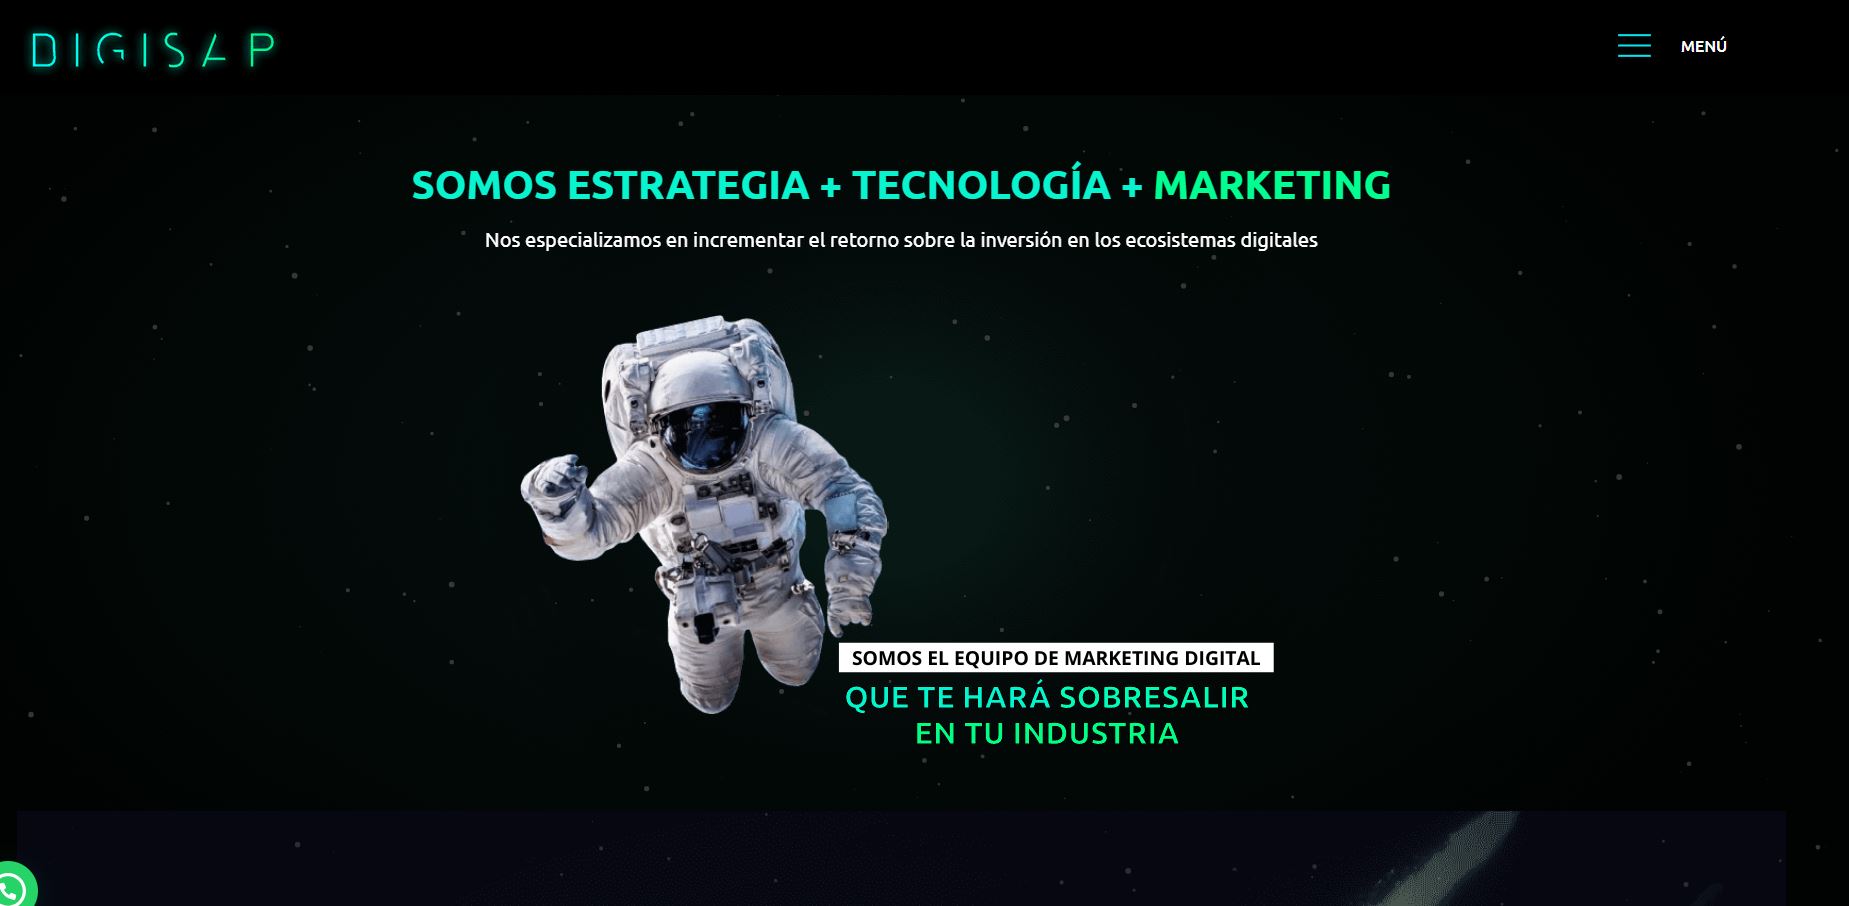 agencia de marketing digital en colombia digisap